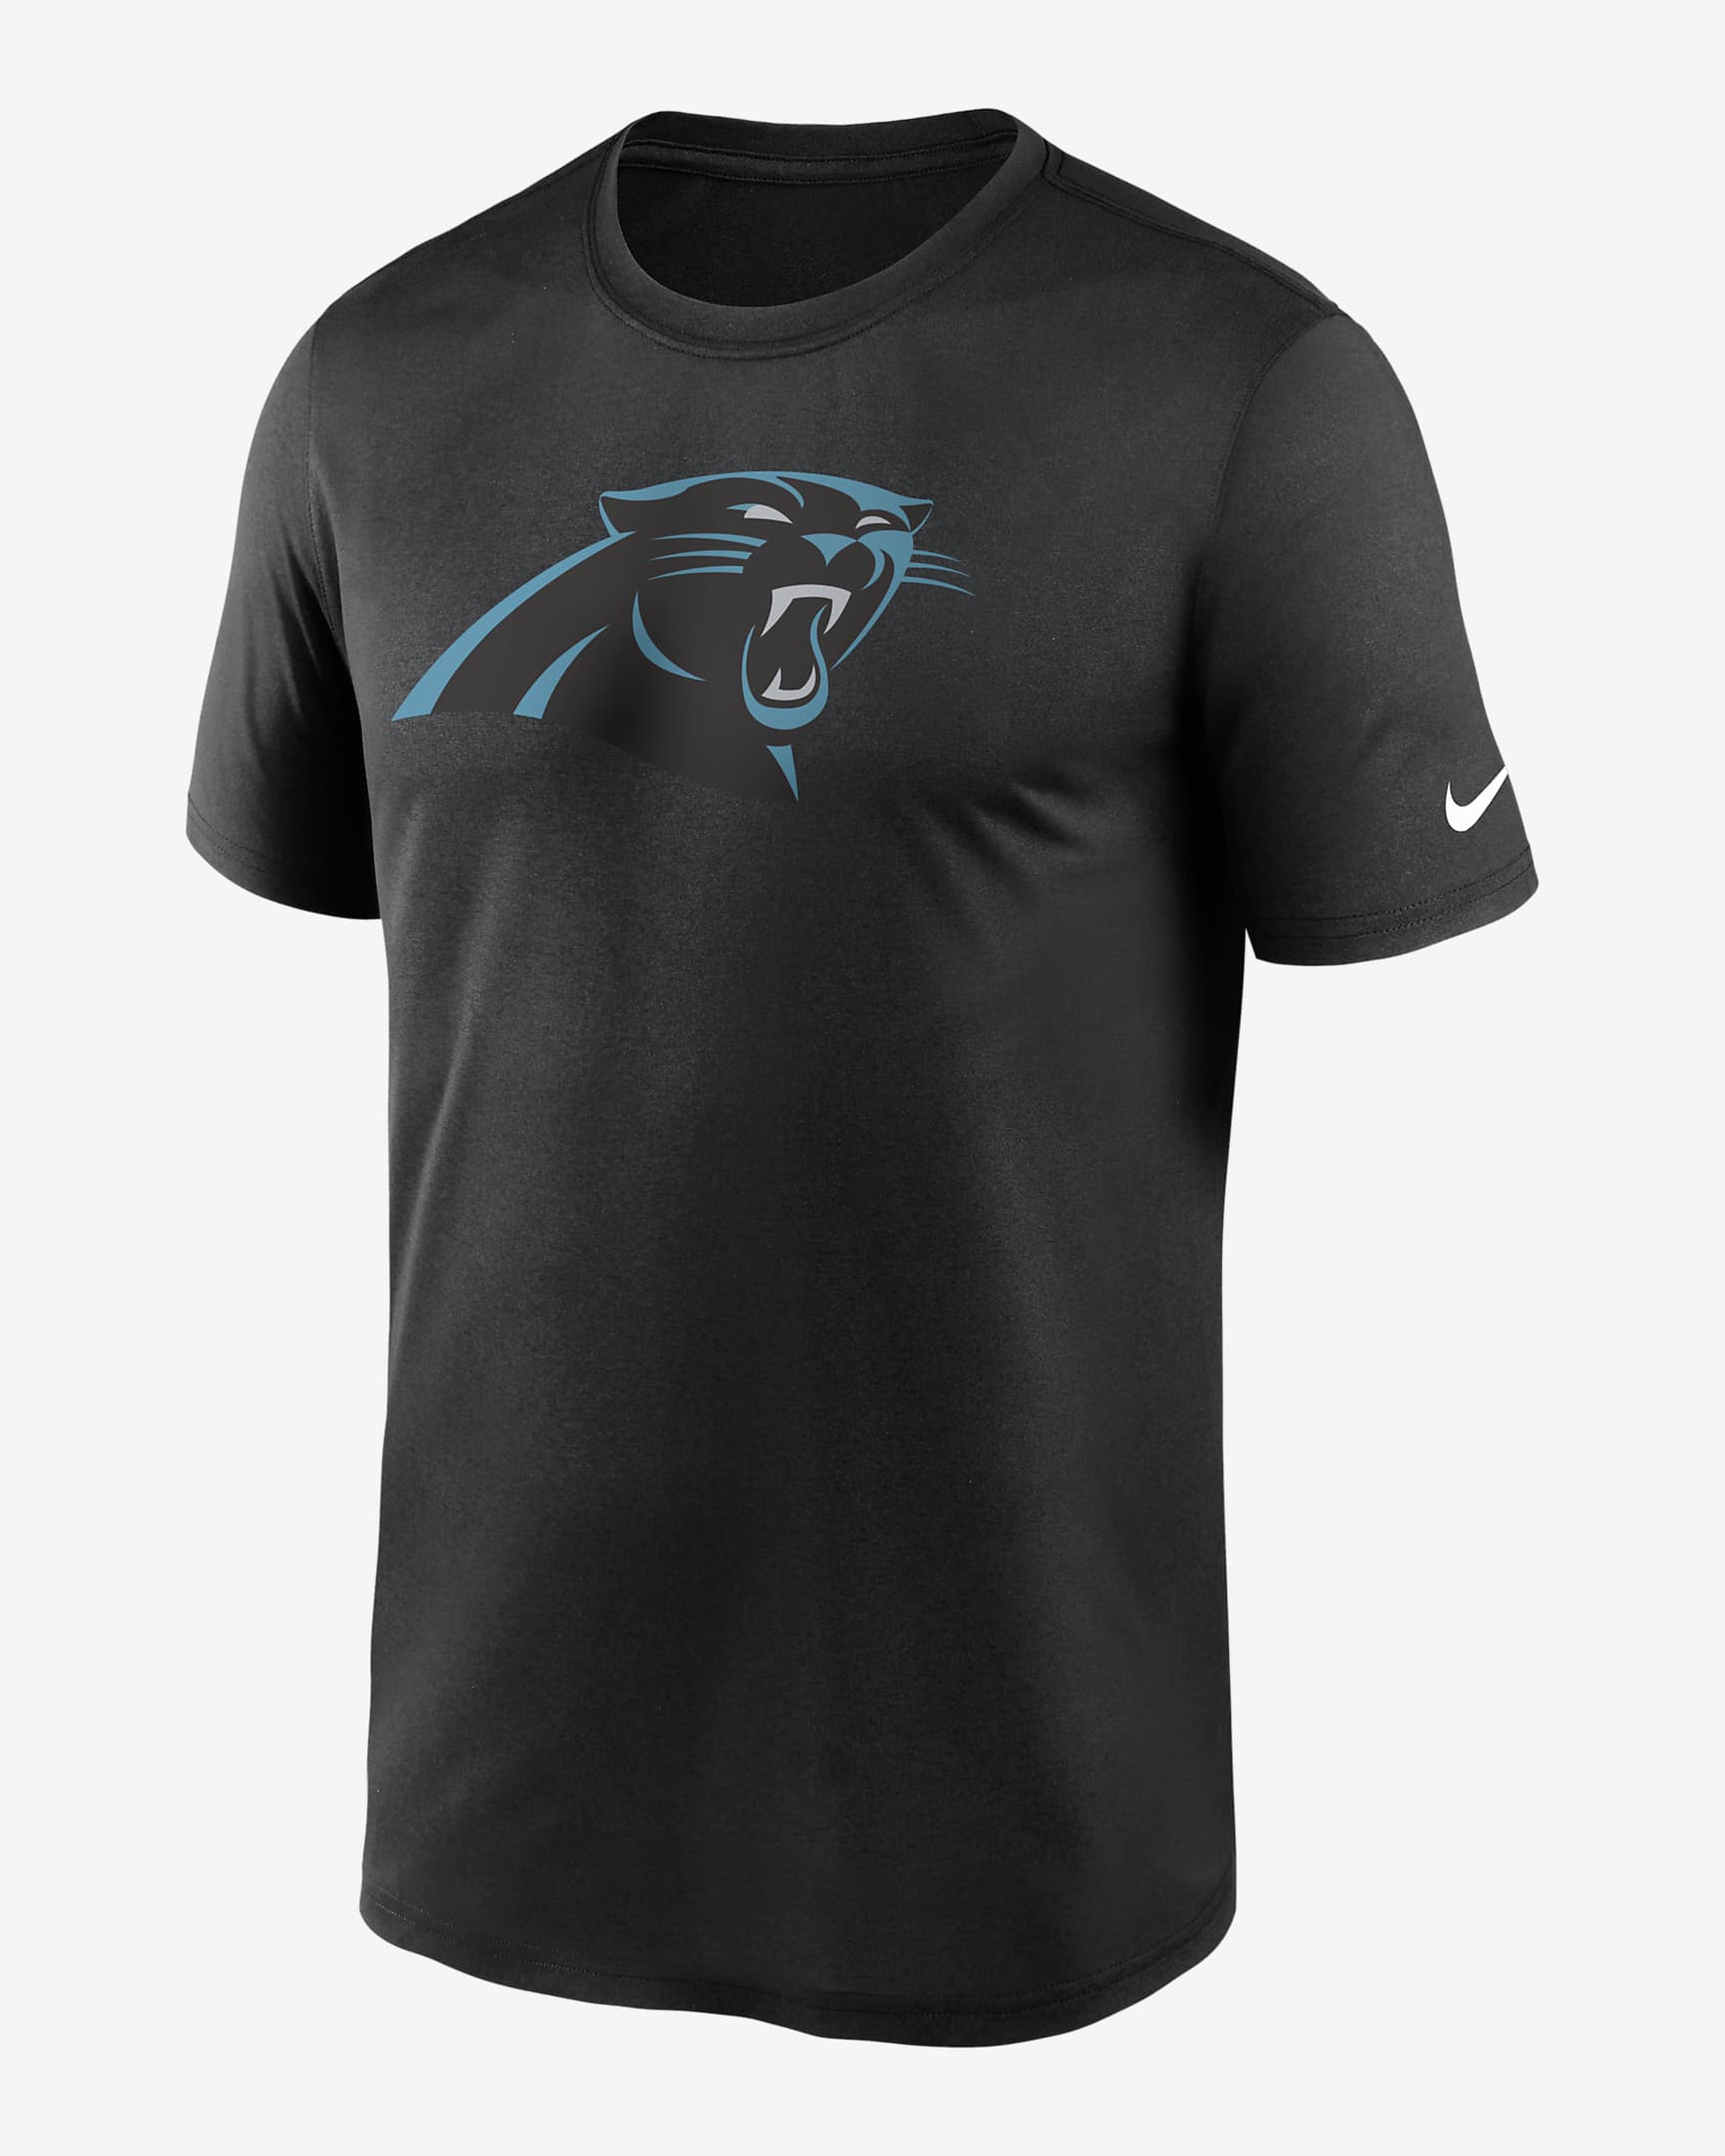 Nike Dri-FIT Logo Legend (NFL Carolina Panthers) Men's T-Shirt. Nike.com